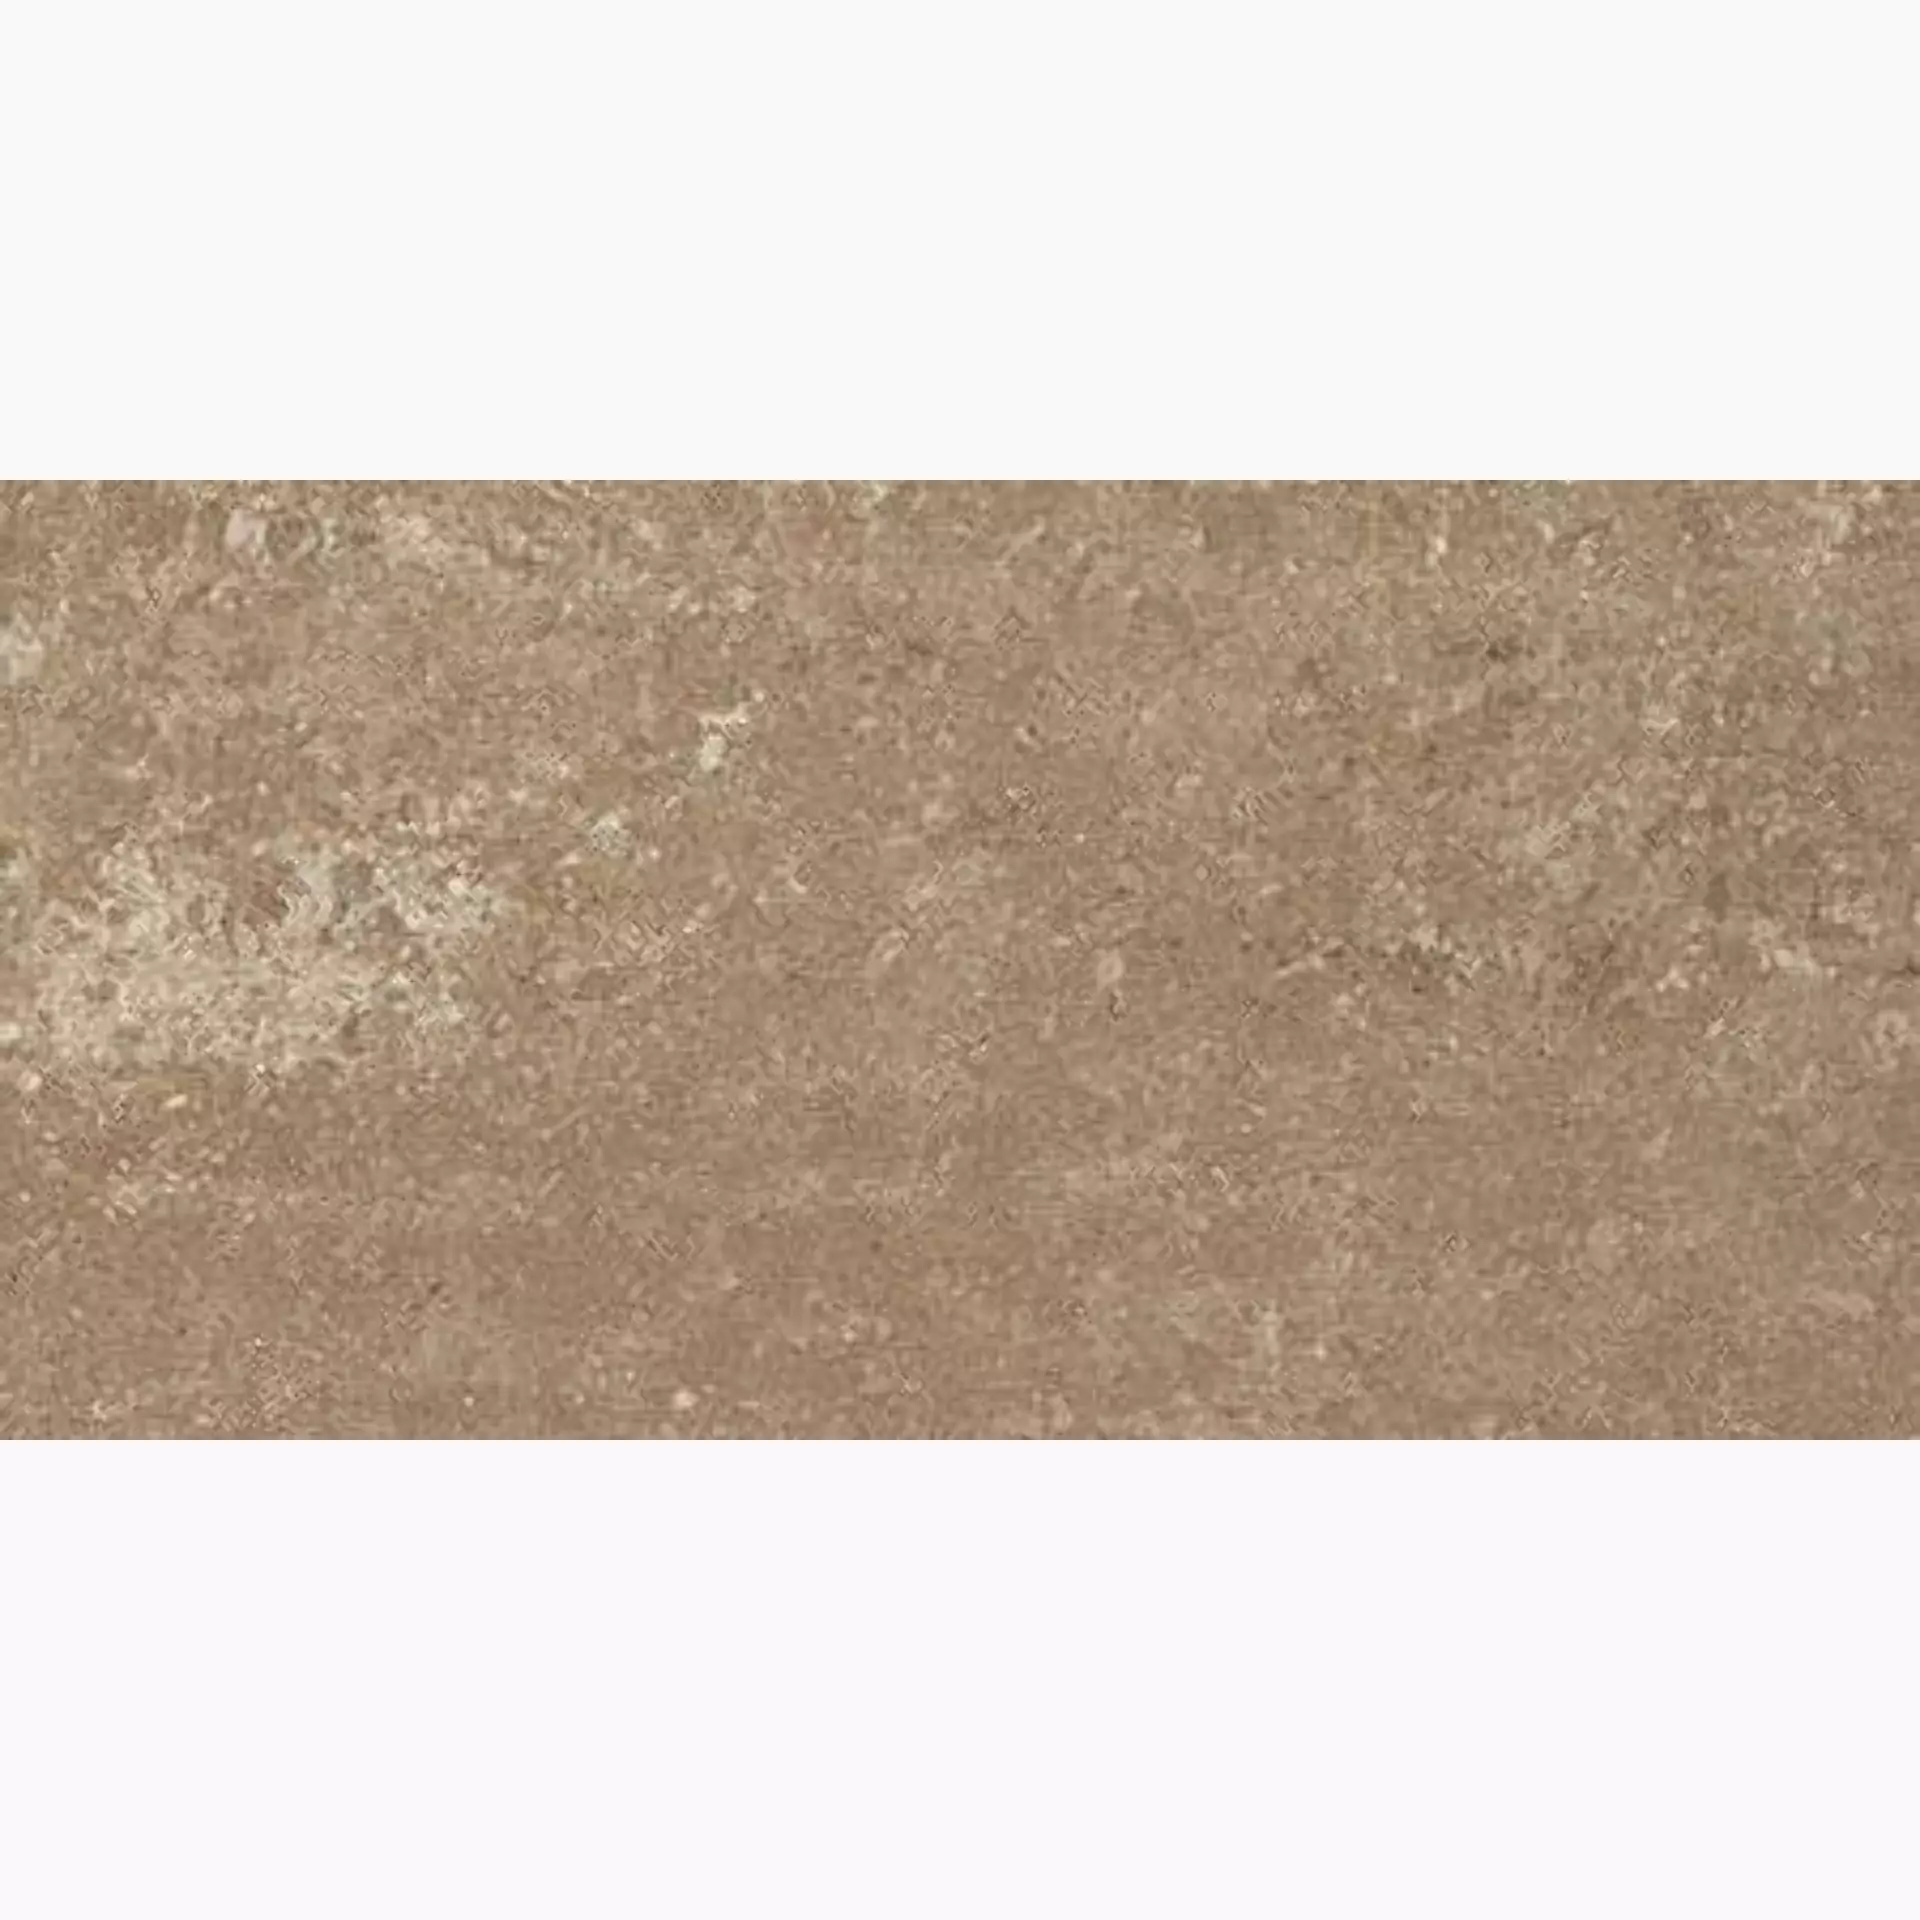 Casalgrande Marte Bronzetto Levigato – Antibacterial 9799145 30x60cm rectified 8,7mm